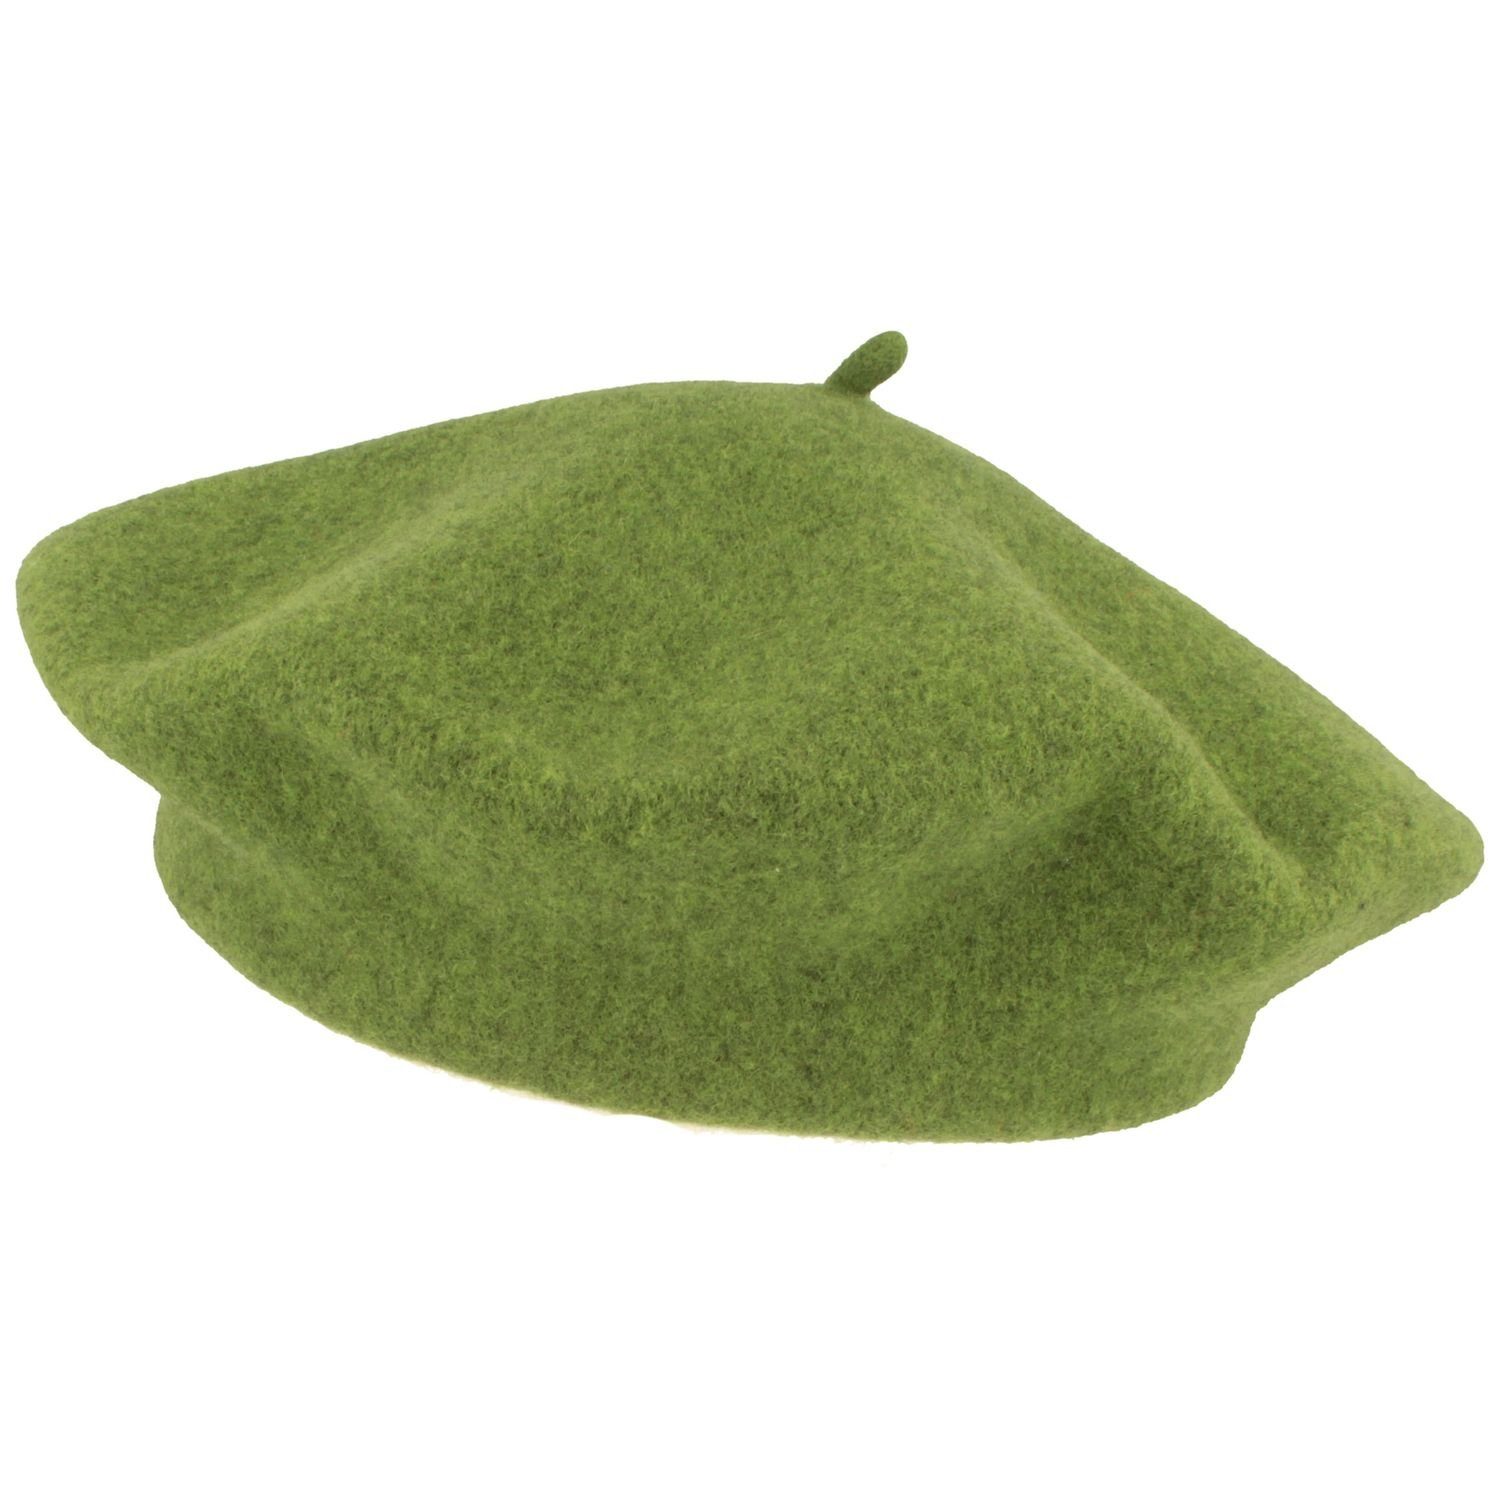 Kopka Baskenmütze klassisch aus 100% Schurwolle grün meliert